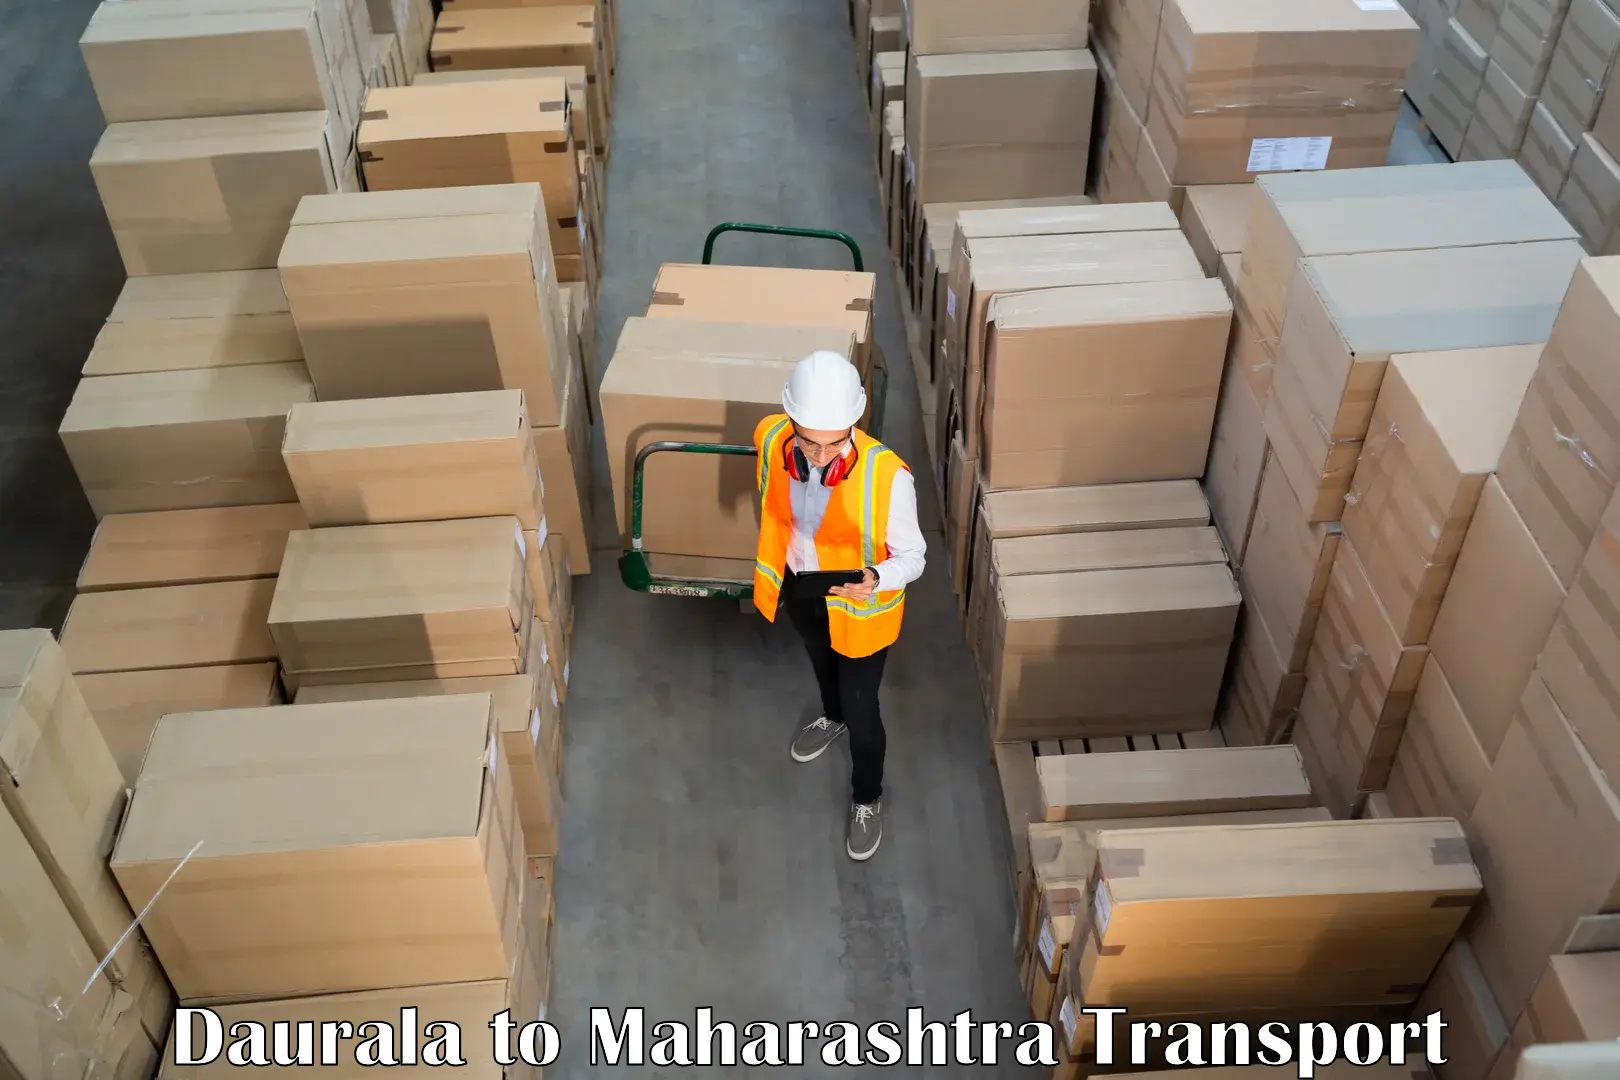 Air freight transport services Daurala to Mumbai University